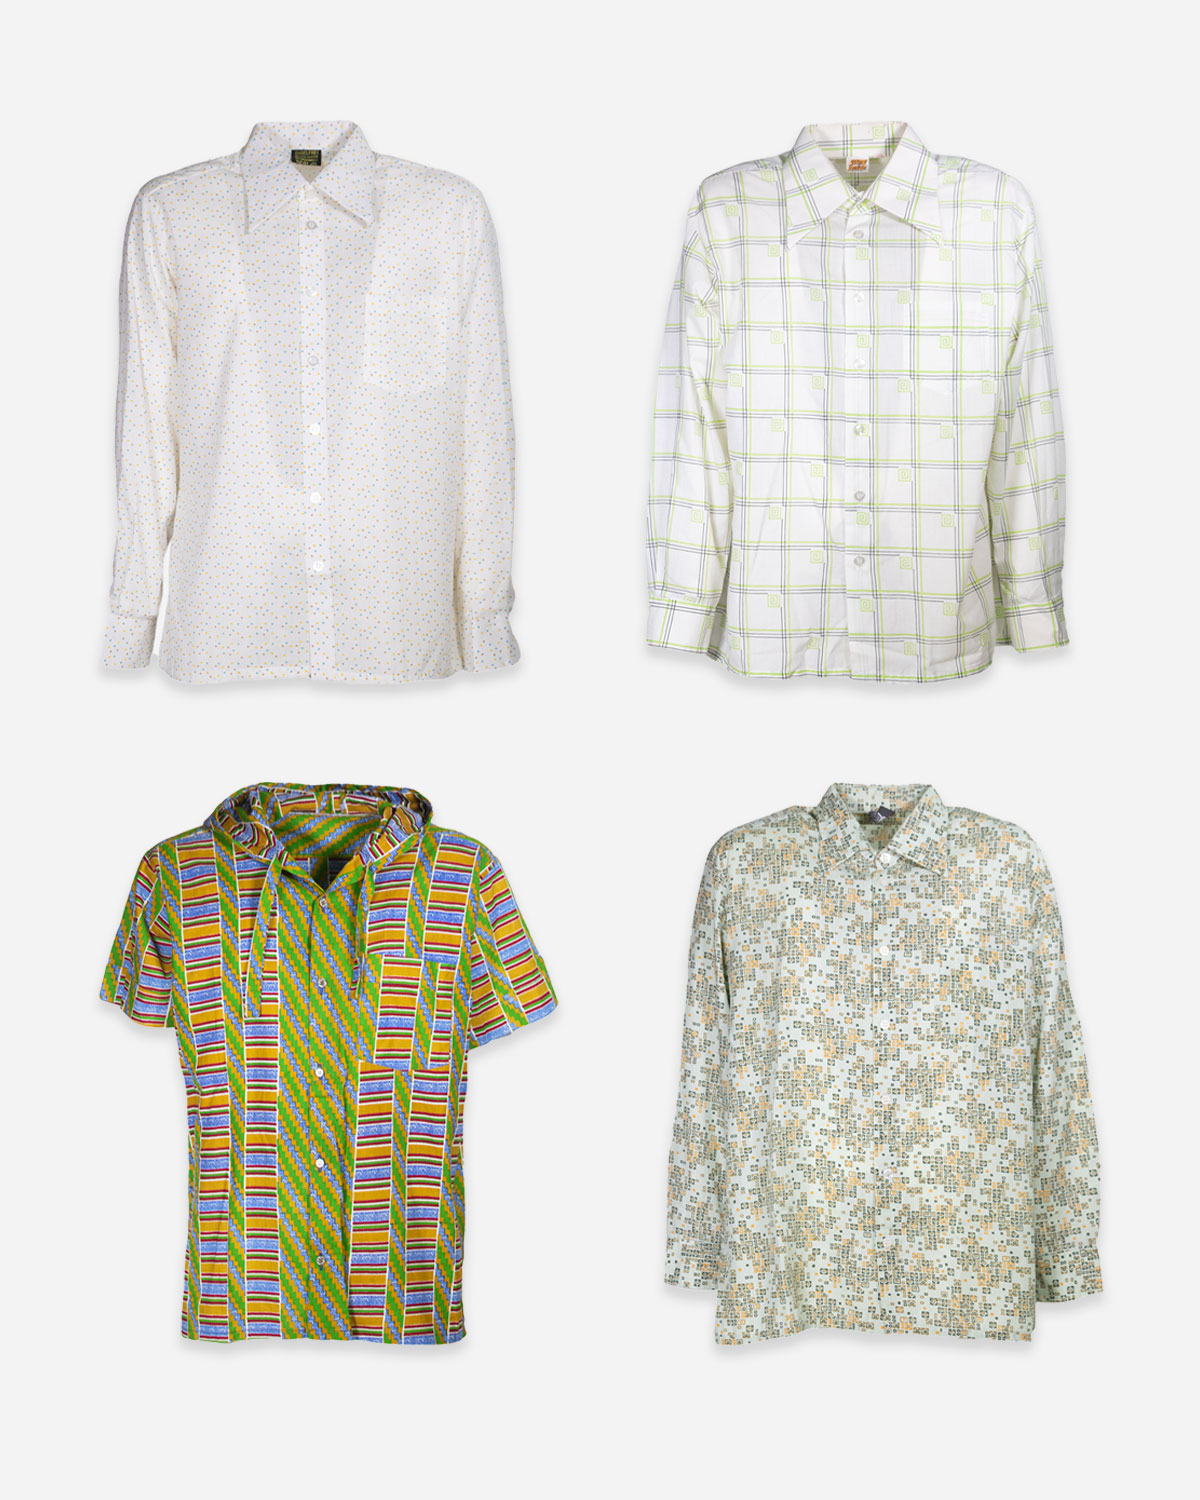 Men's 70s shirts: 4 pieces